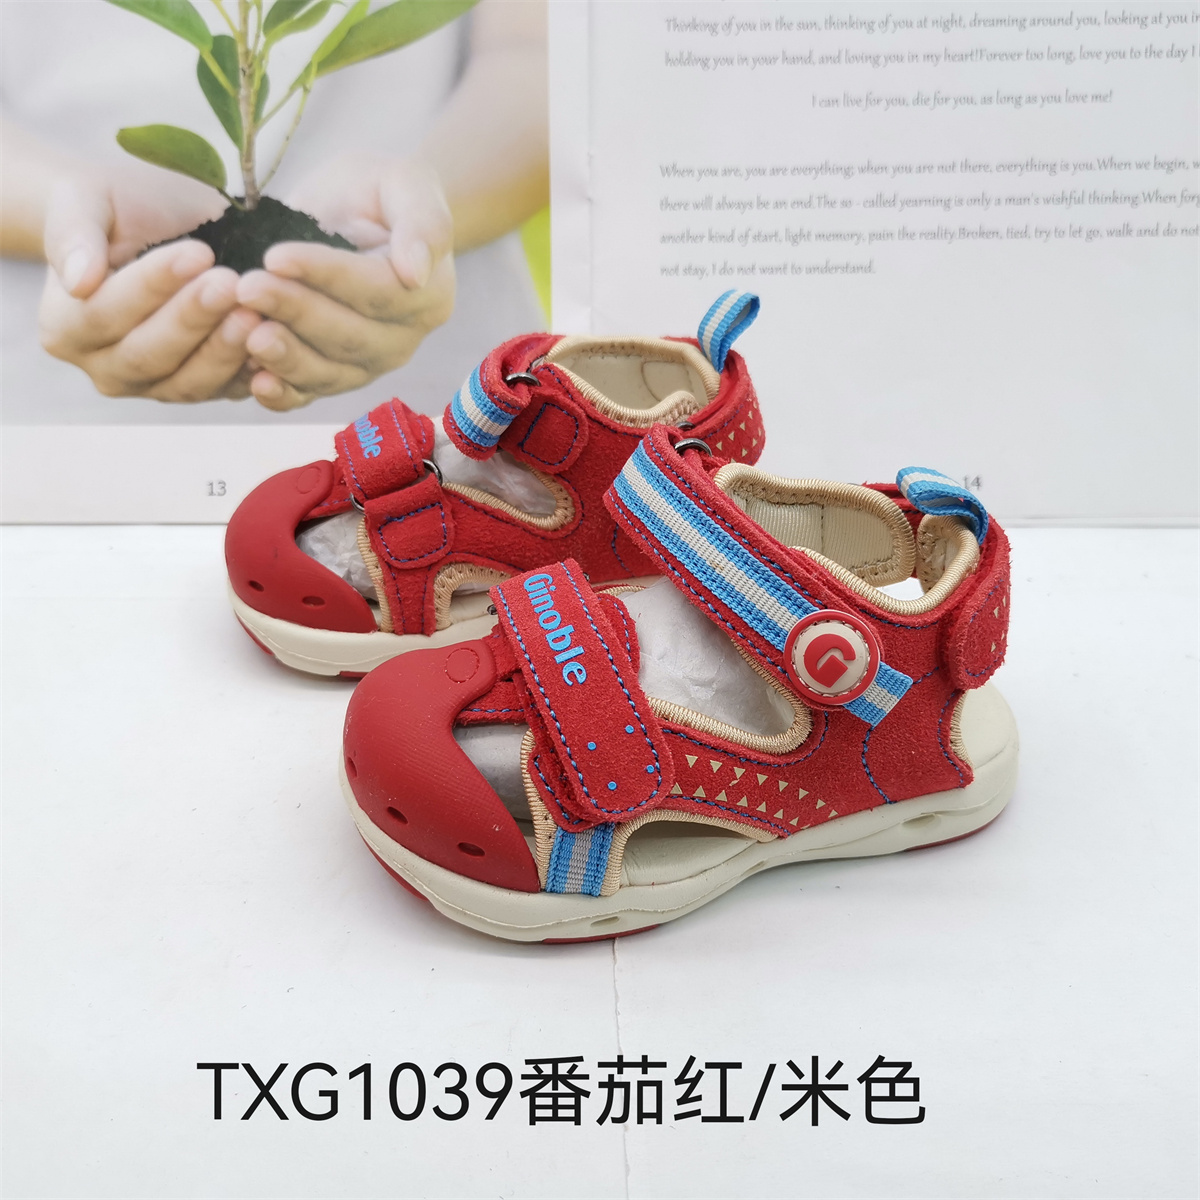 基诺浦夏款宝宝鞋反绒皮机能鞋凉鞋TXG1039.1040.1041.1042.1043